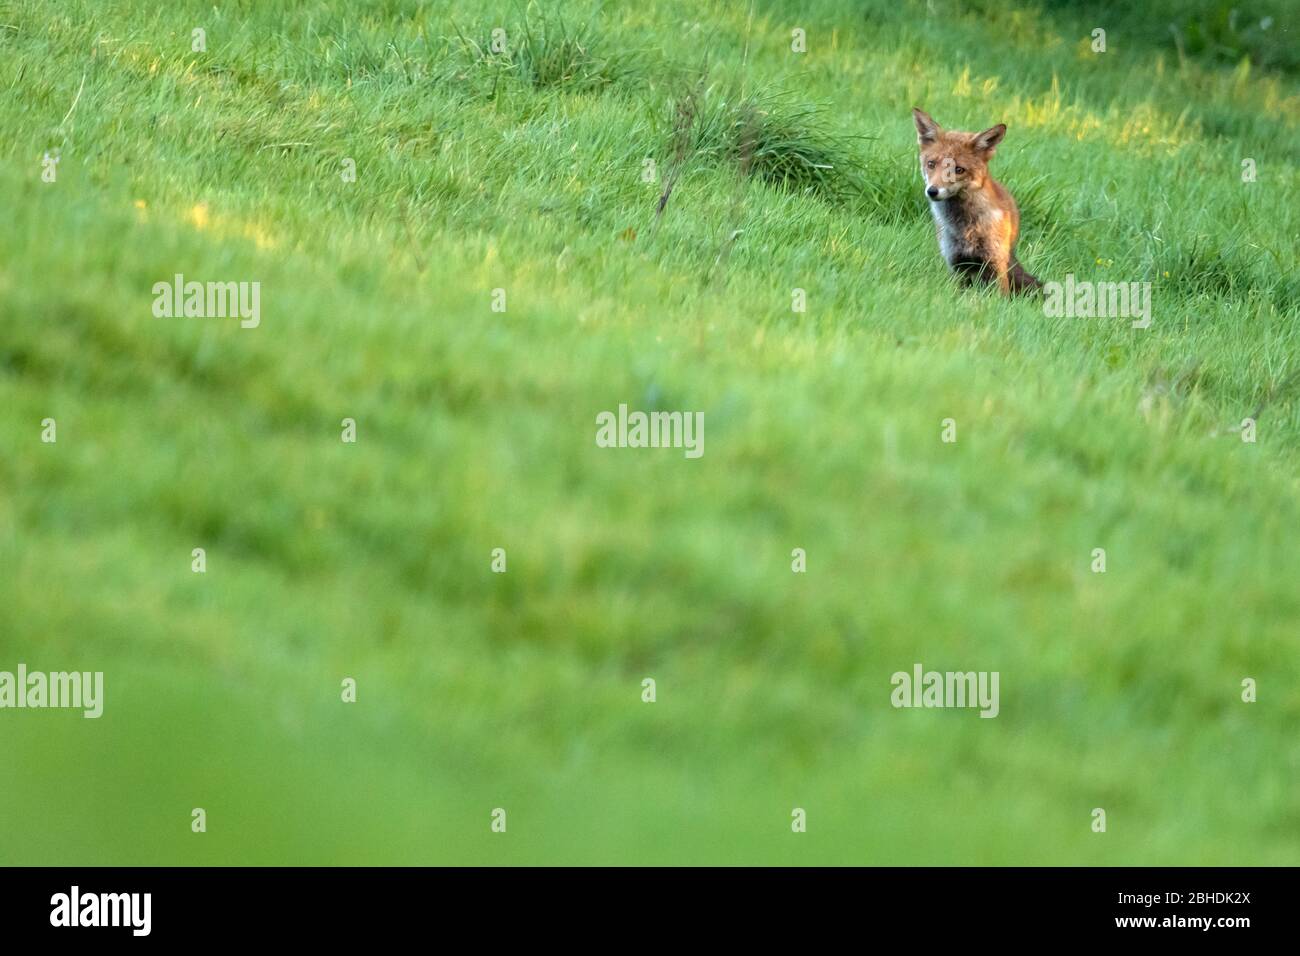 Red Fox marchant dans un champ verdoyant et luxuriant Banque D'Images